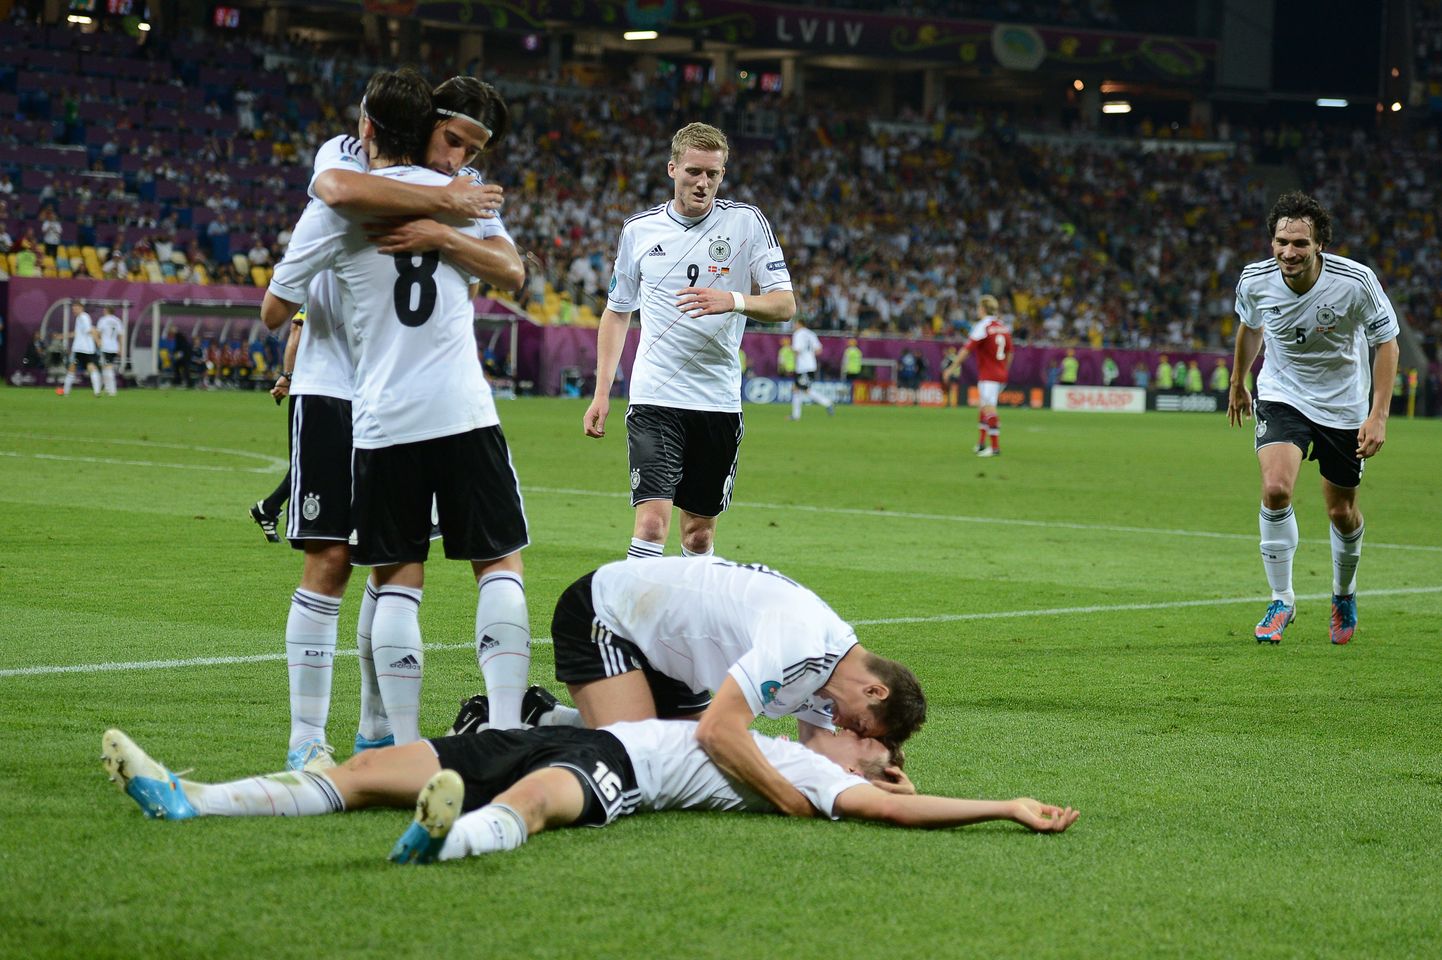 Saksamaa võitis alagrupis kõik kolm mängu.